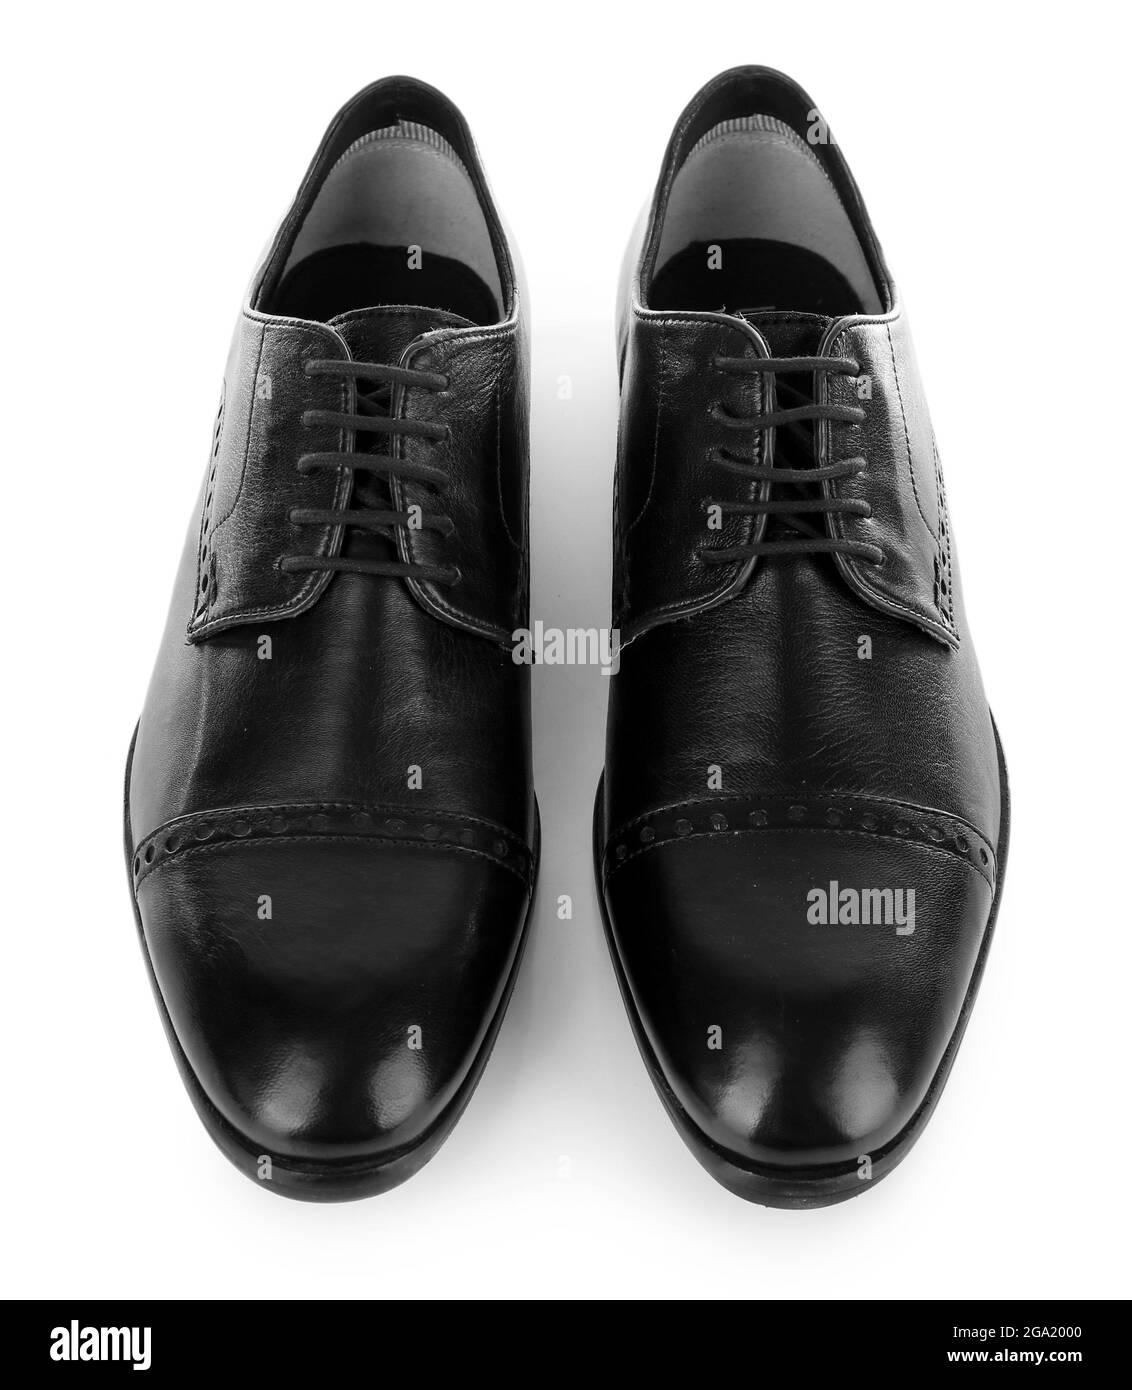 Chaussures homme noir brillant isolées sur blanc Photo Stock - Alamy